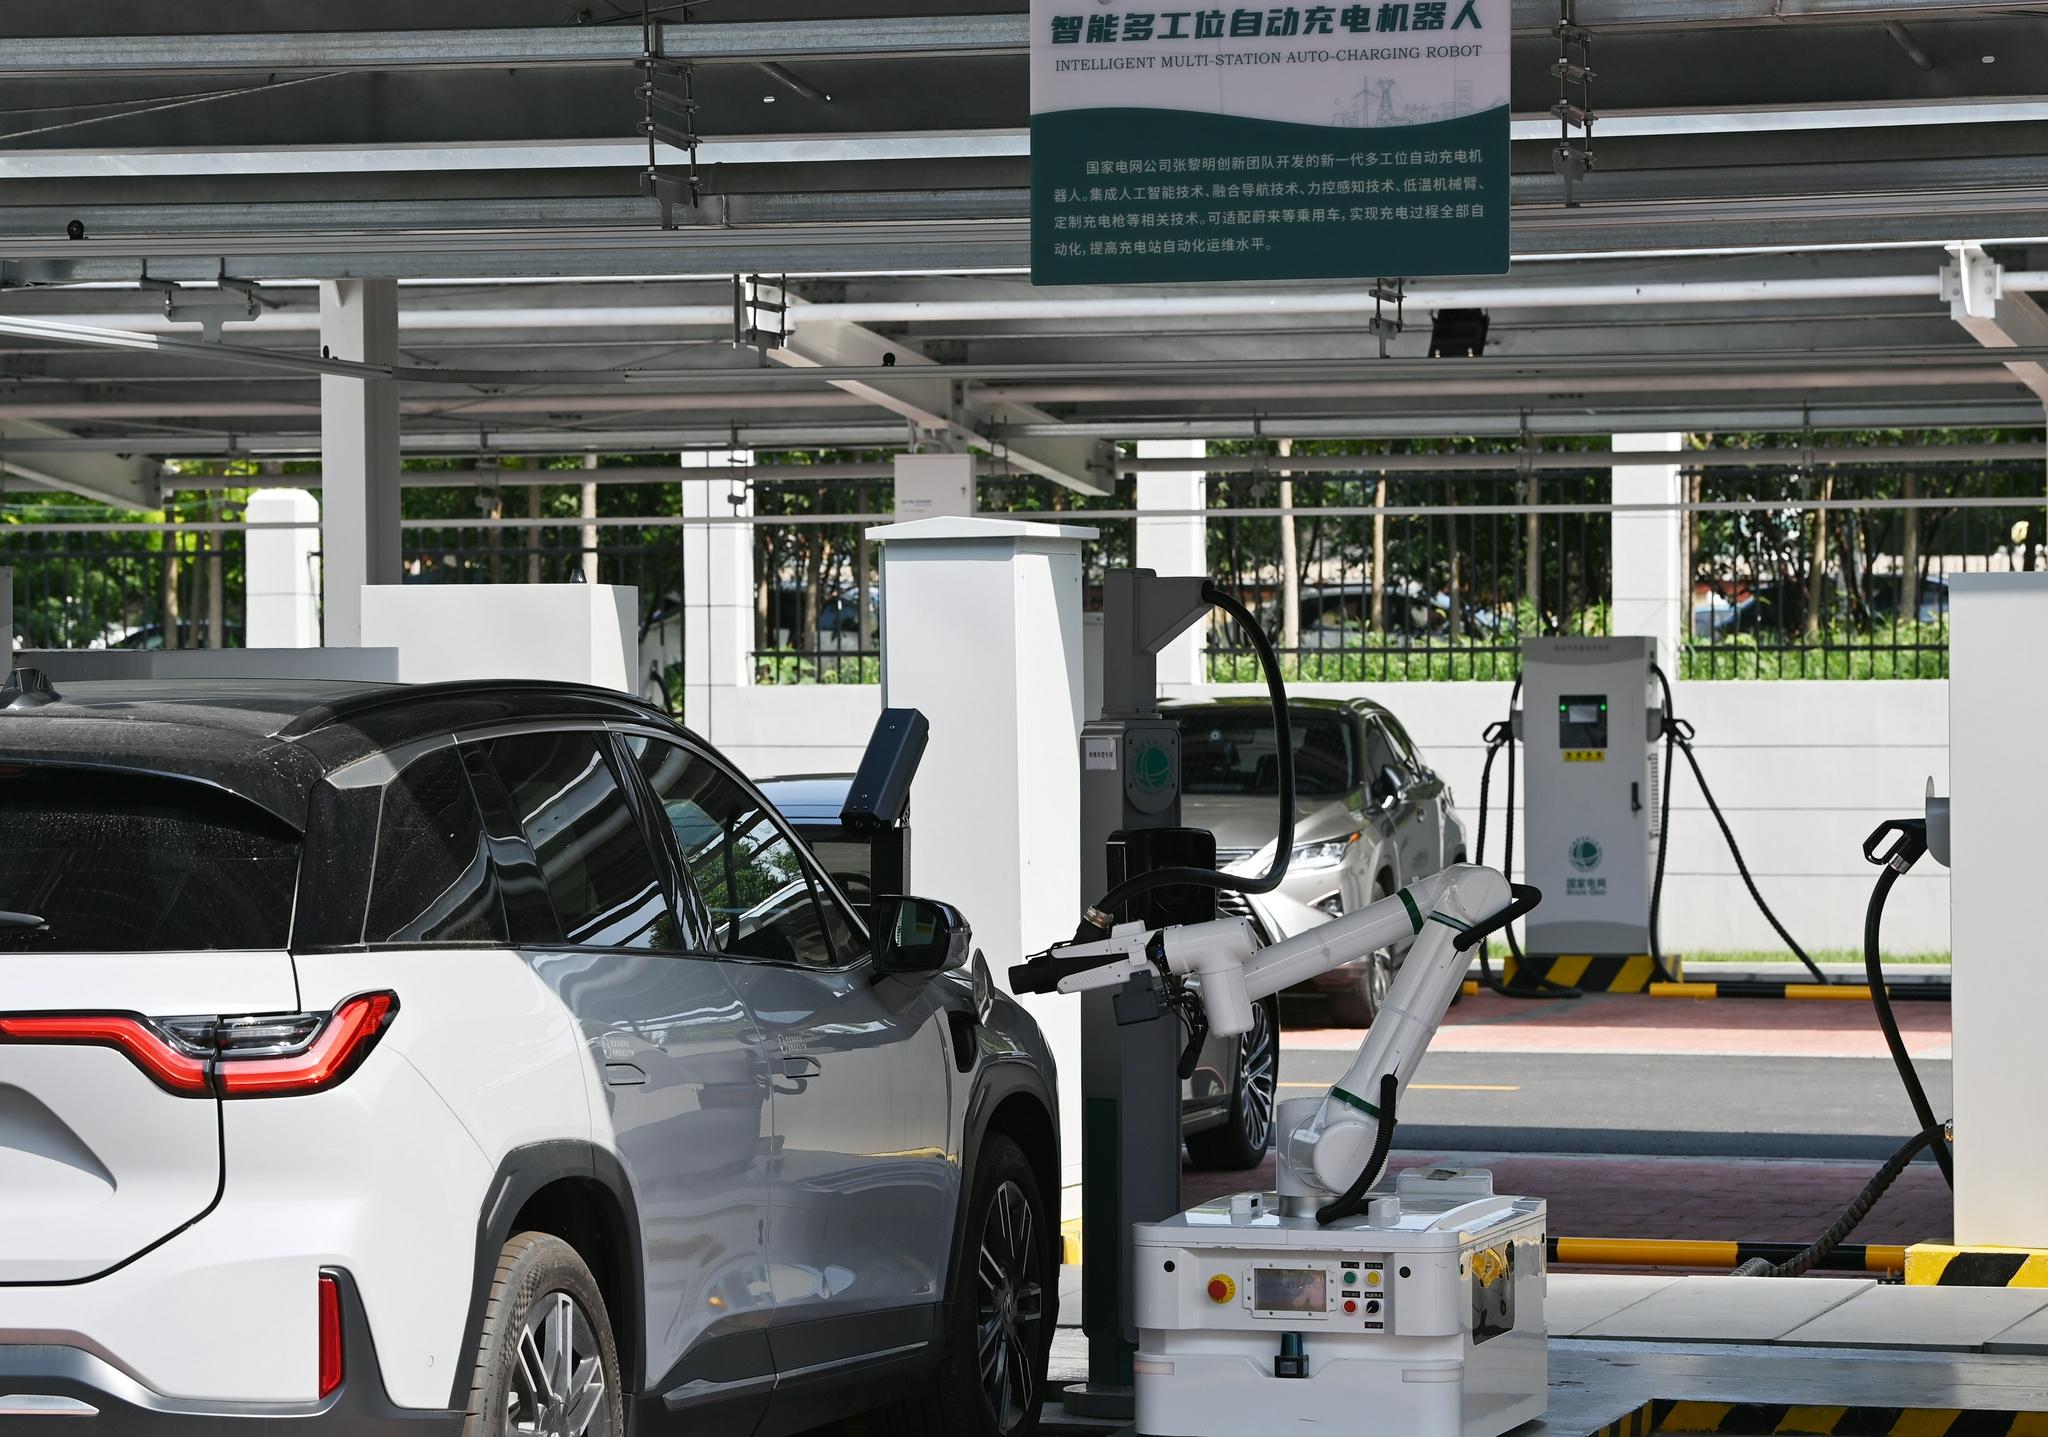 ▲2021年8月18日，天津，机器人正在为一辆新能源汽车充电。图/新华社